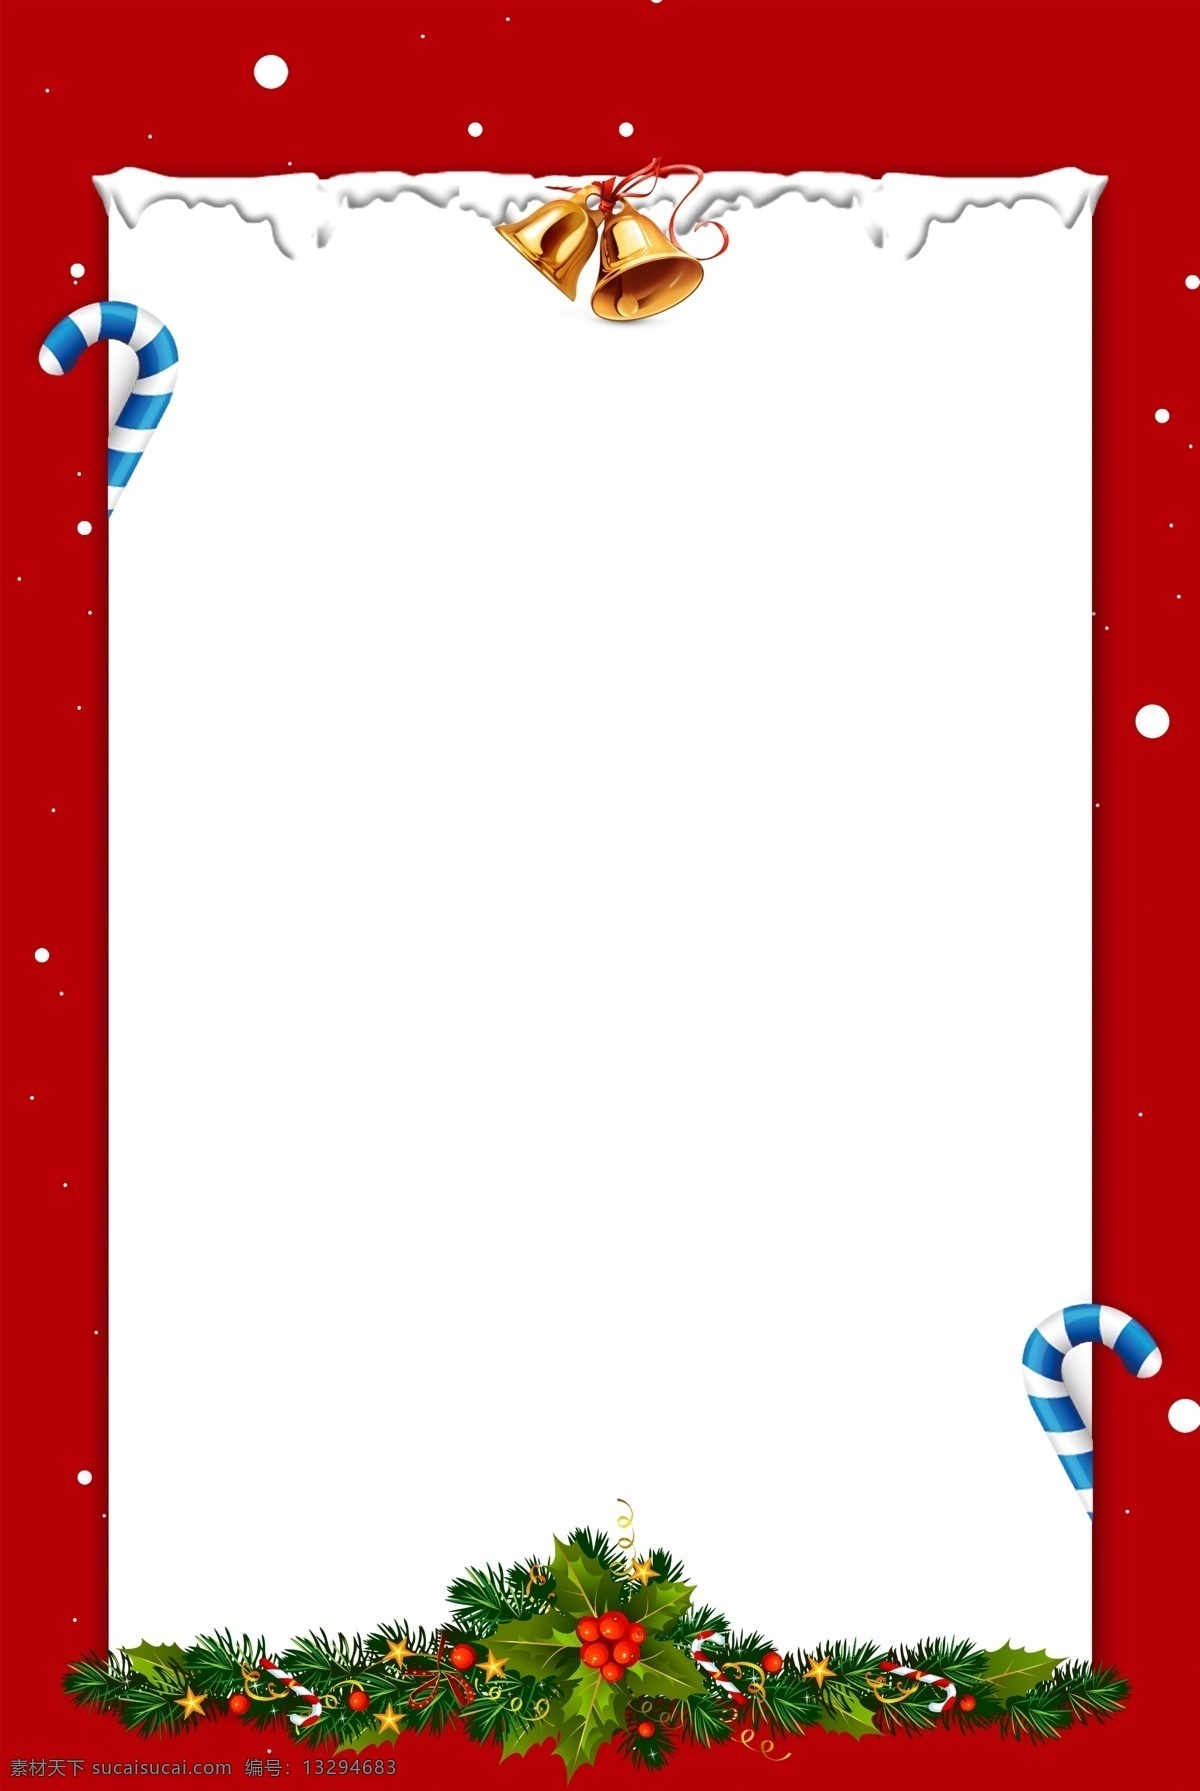 红色 西方 节日 圣诞节 广告 背景 图 圣诞树 冬季 圣诞老人 微立体 铃铛 派对 活动 麋鹿 广告背景